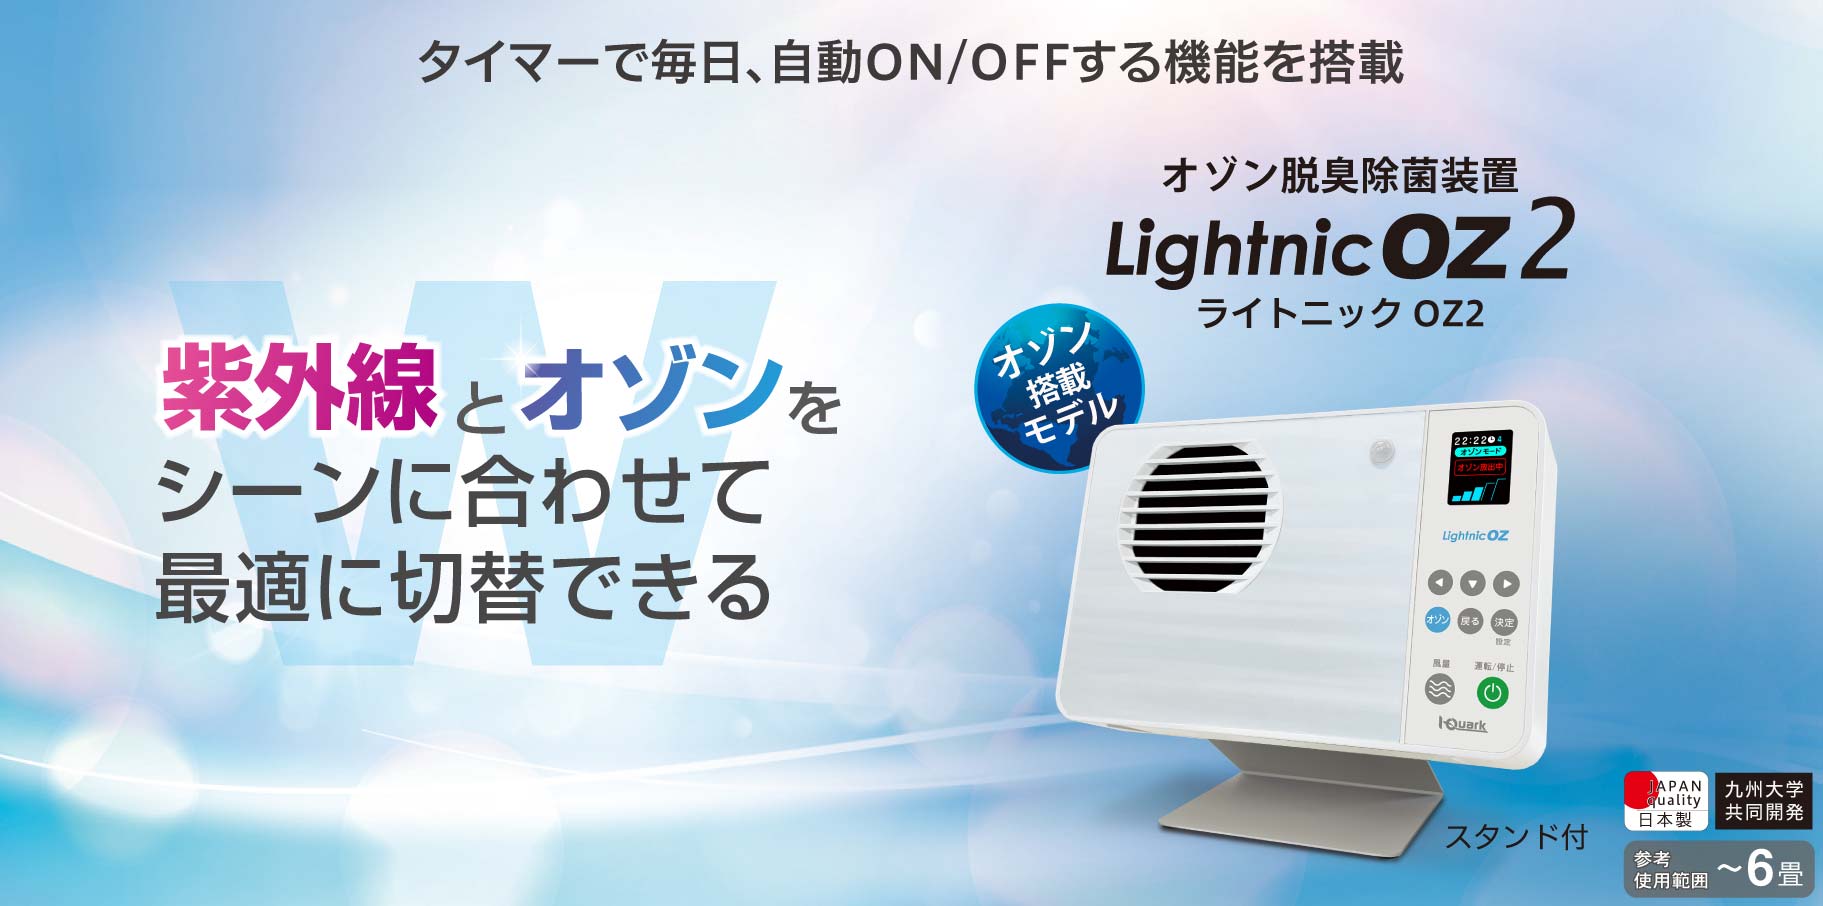 【製品画像】卓上小型空気清浄機LightnicOZは紫外線とオゾンをシーンに合わせて最適に切替できる。日本製。6畳までのエリアで使用